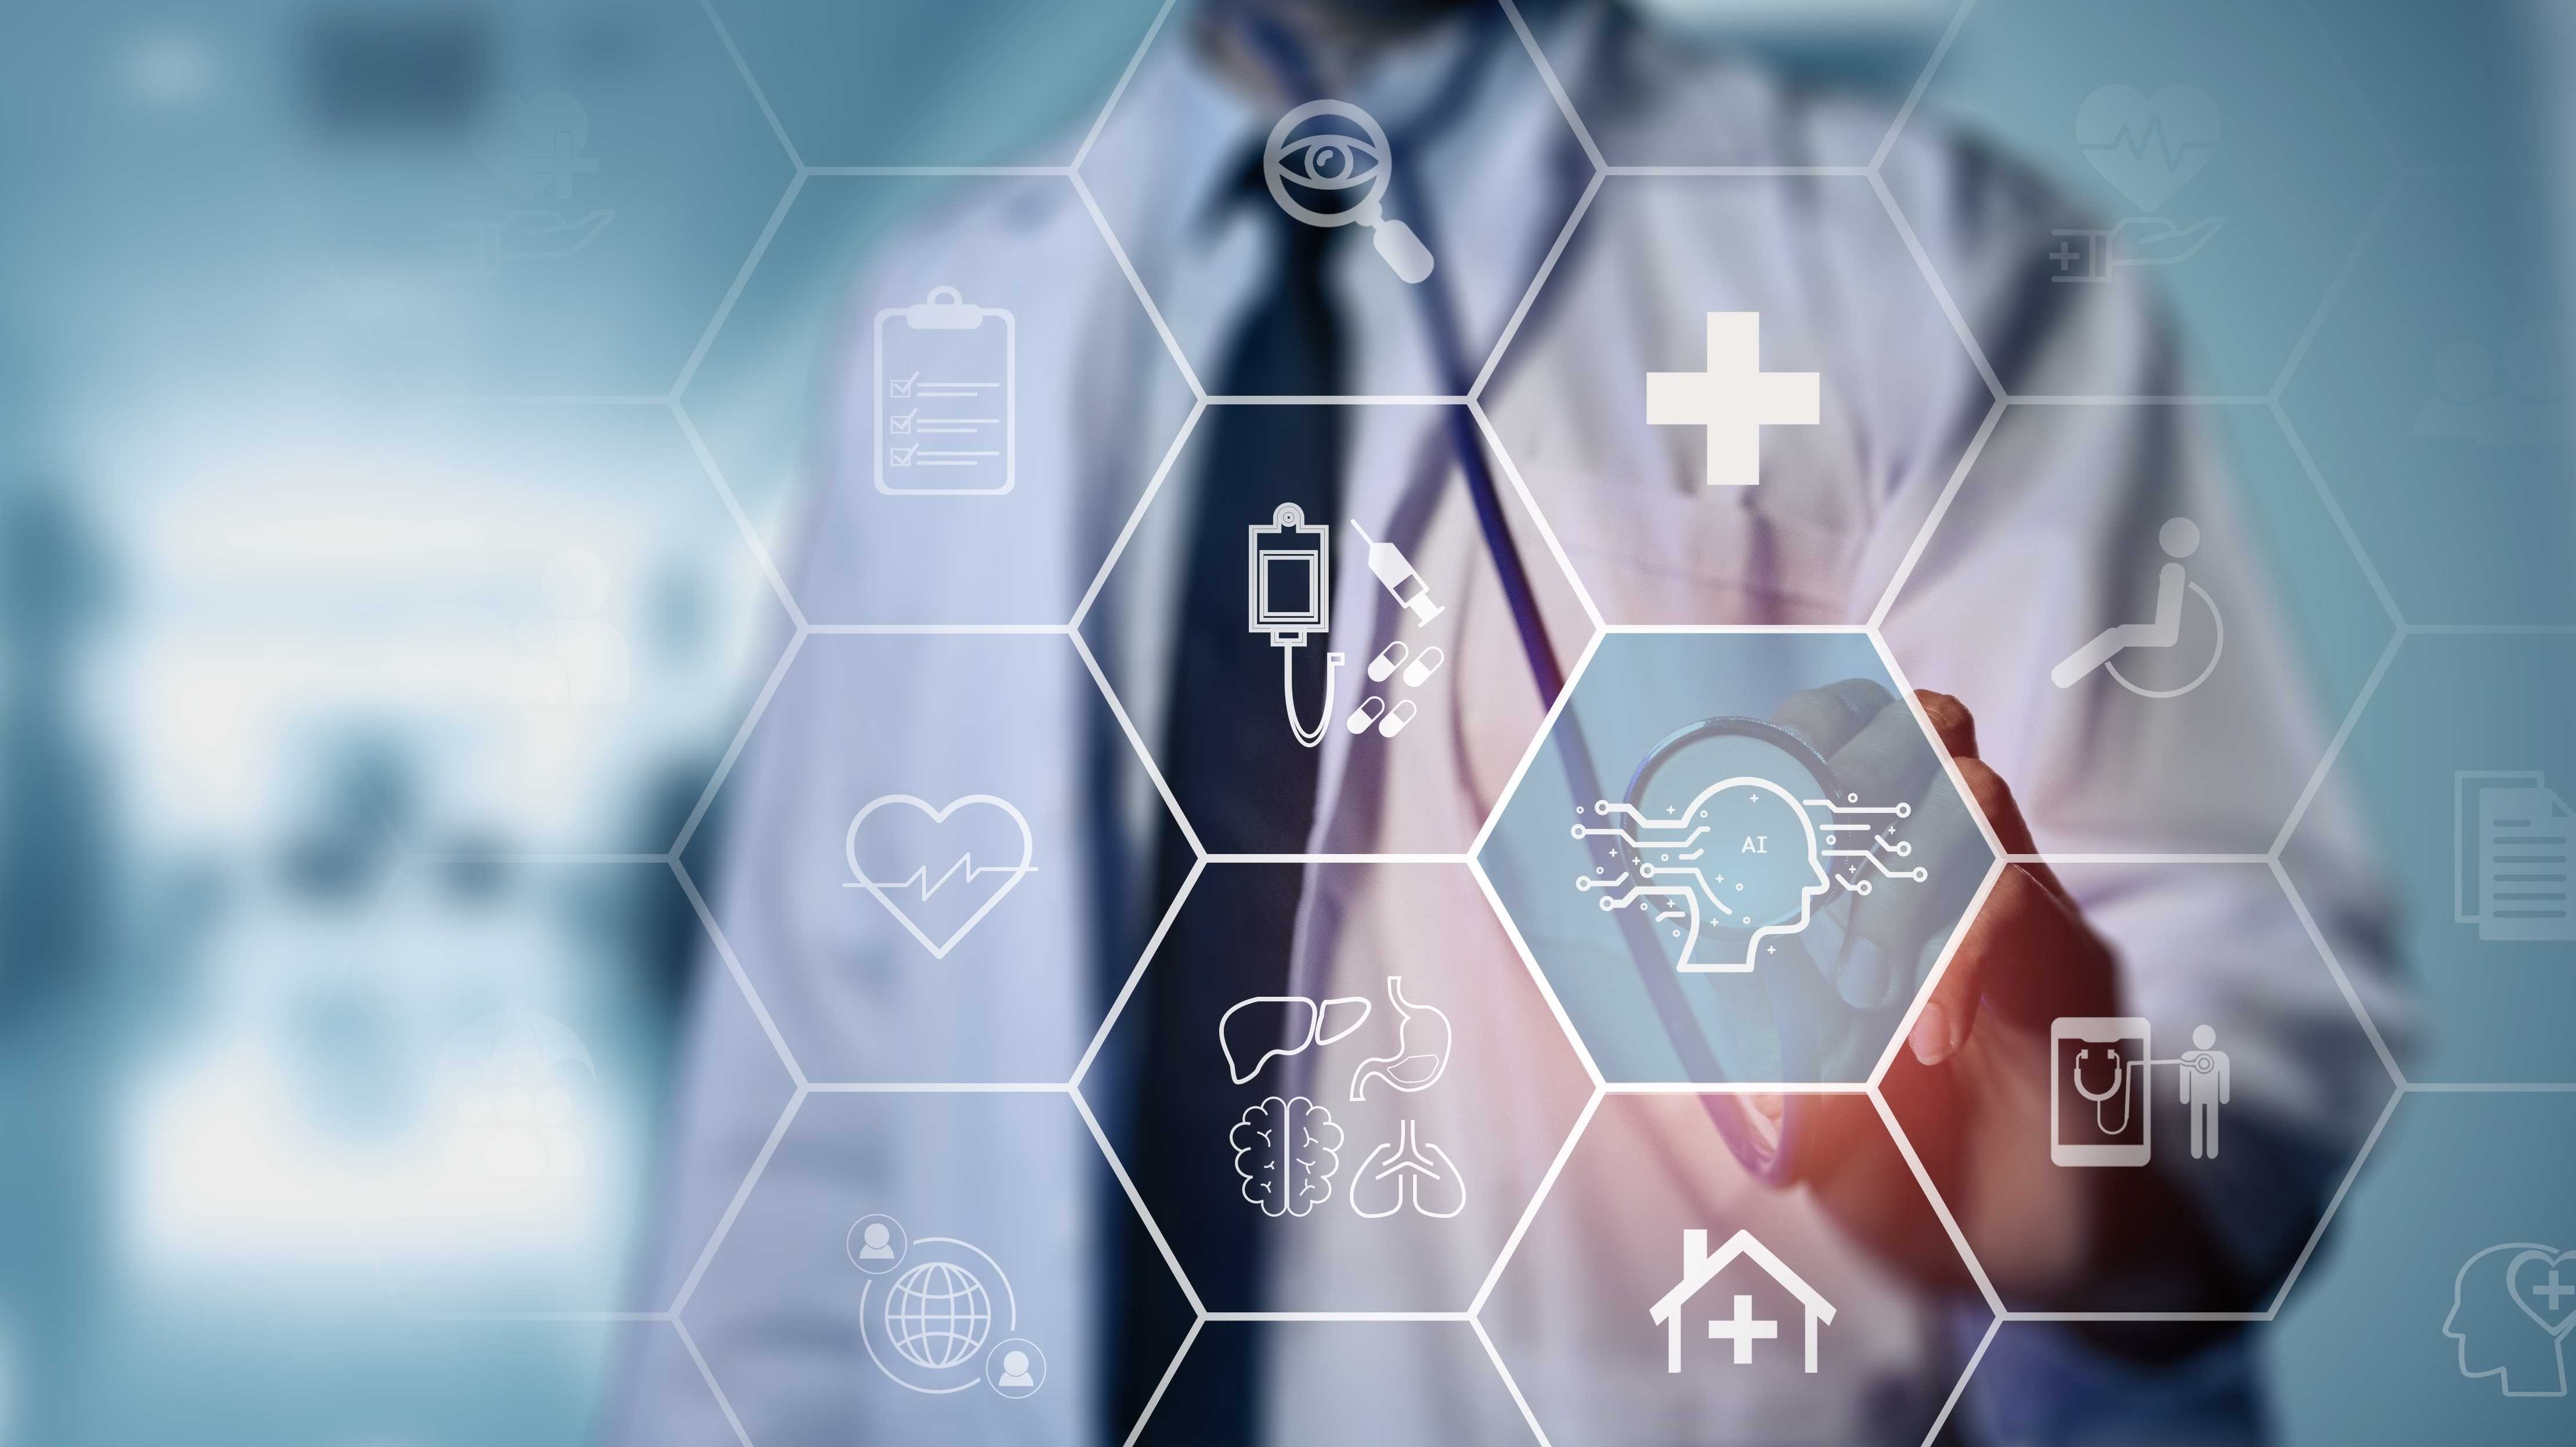 Mann mit Arztkittel zeigt auf verschiedene Icons zur Digitalisierung im Gesundheitswesen